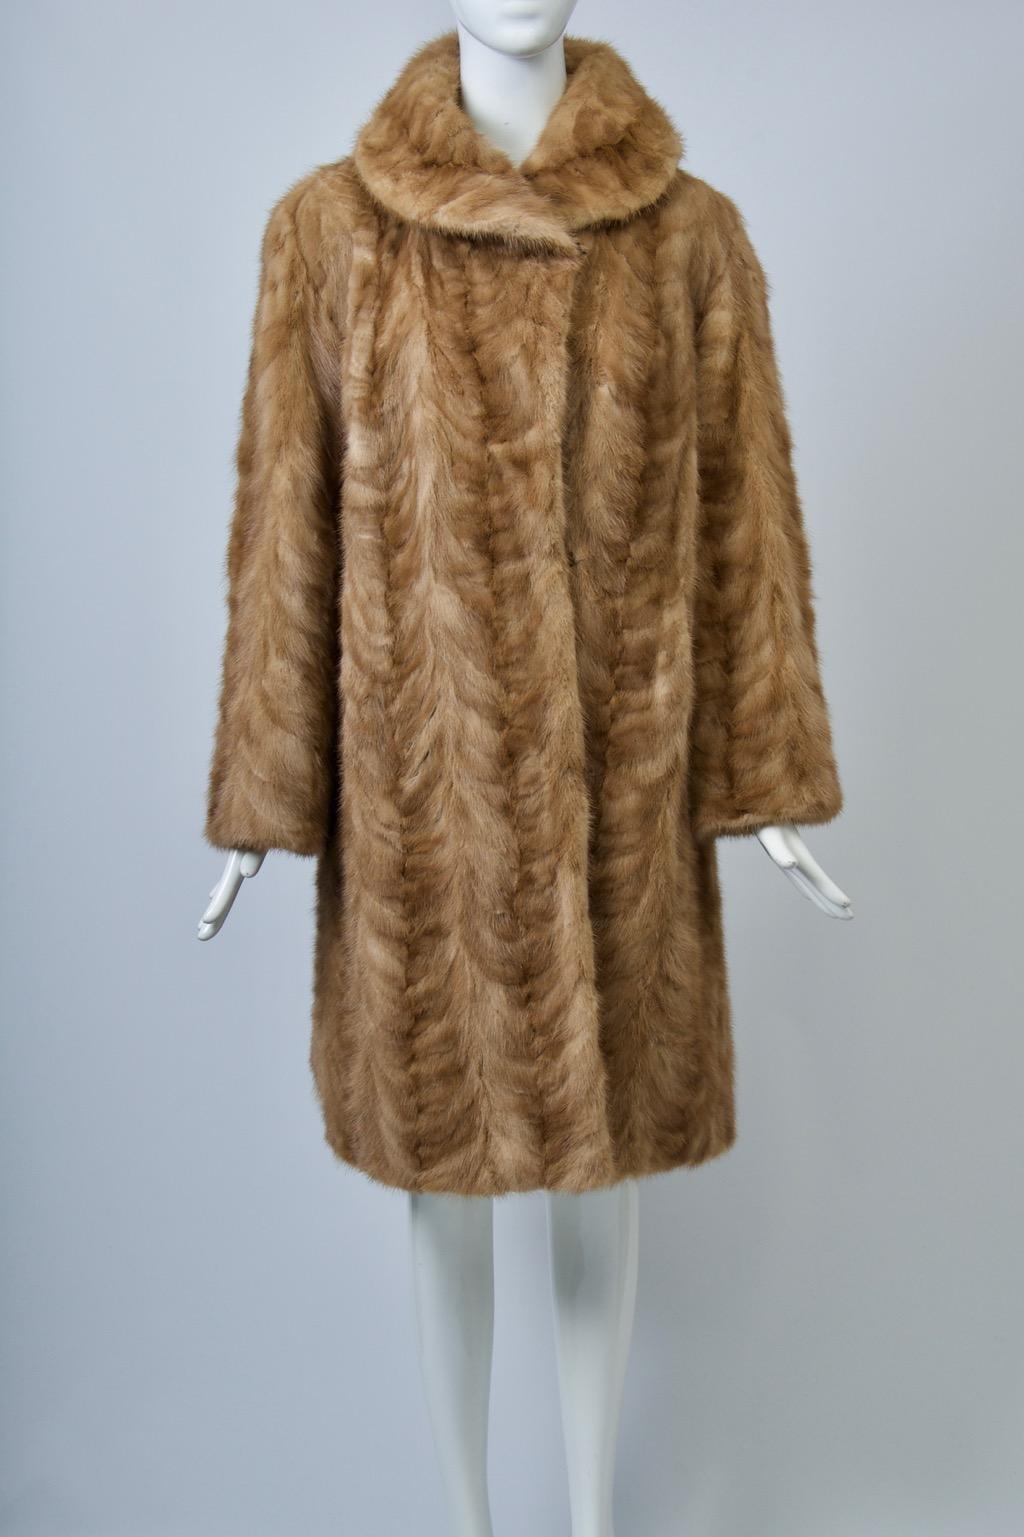 Le manteau en vison couleur miel, avec un motif à chevrons, présente une silhouette droite avec un peu d'ampleur dans le dos, des manches droites rentrées et un col arrondi, ainsi que des poches en biais. L'intérieur est doté d'une doublure brodée